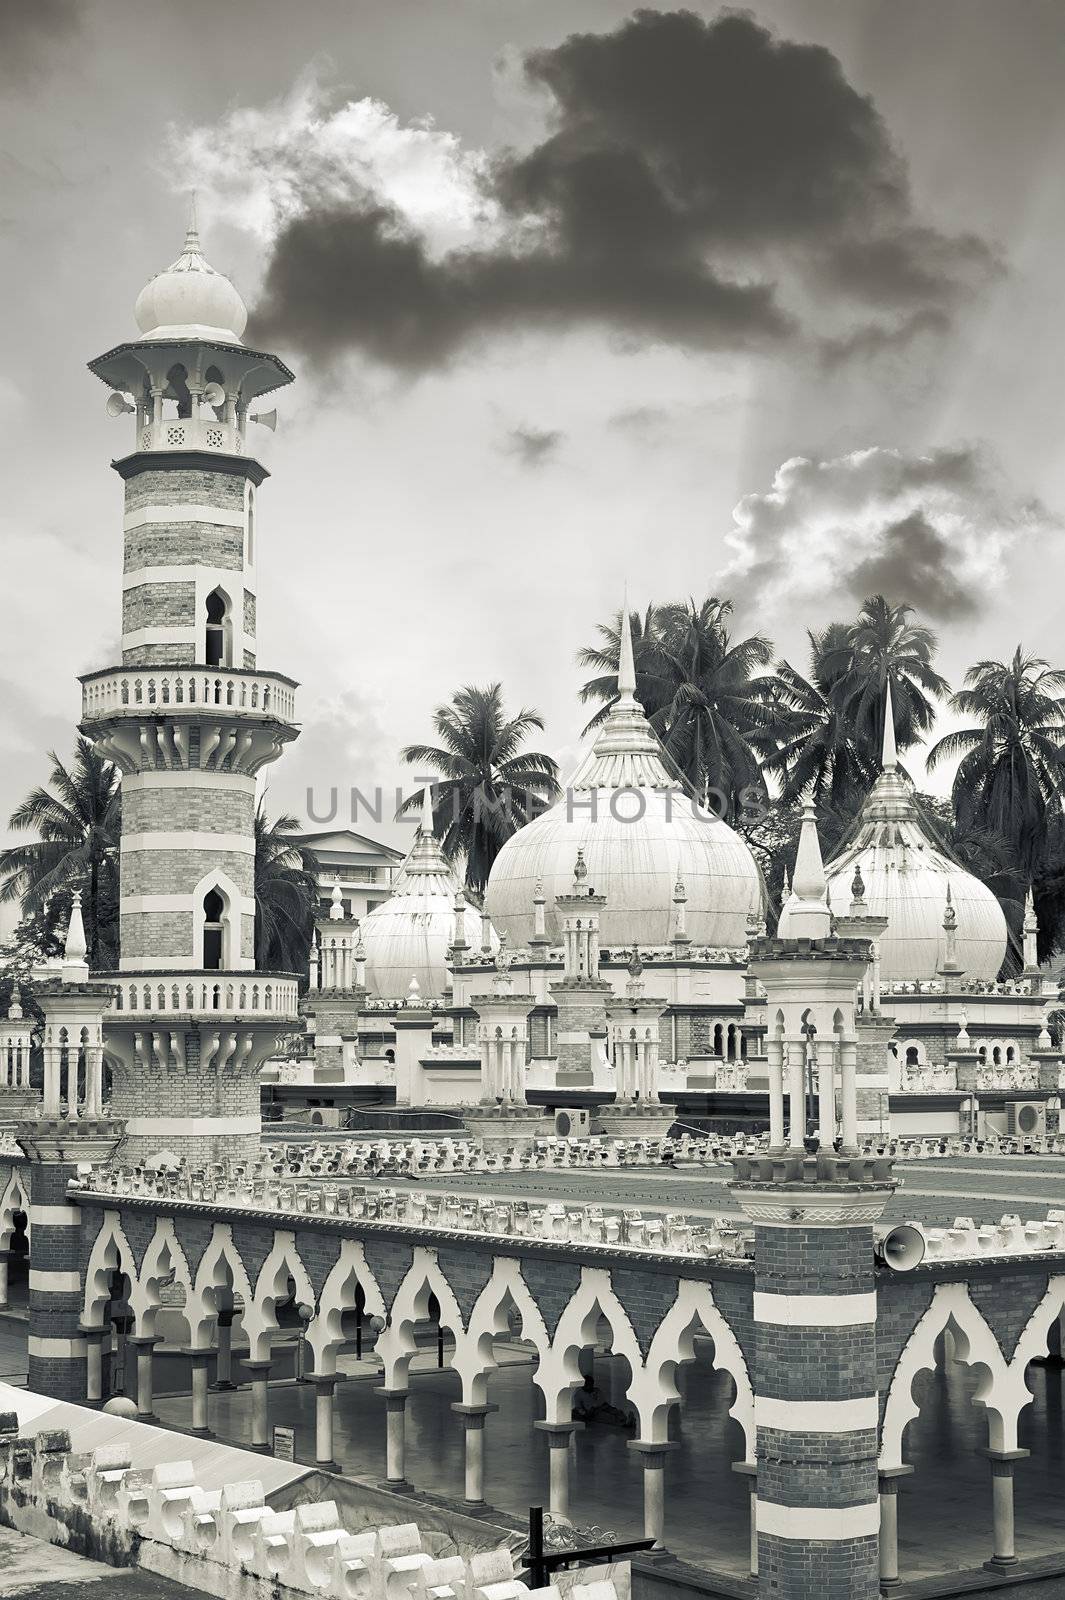 Mosque scenery with famous KL landmark, Masjid Jamek, in Kuala Lumpur, Malaysia, Asia.